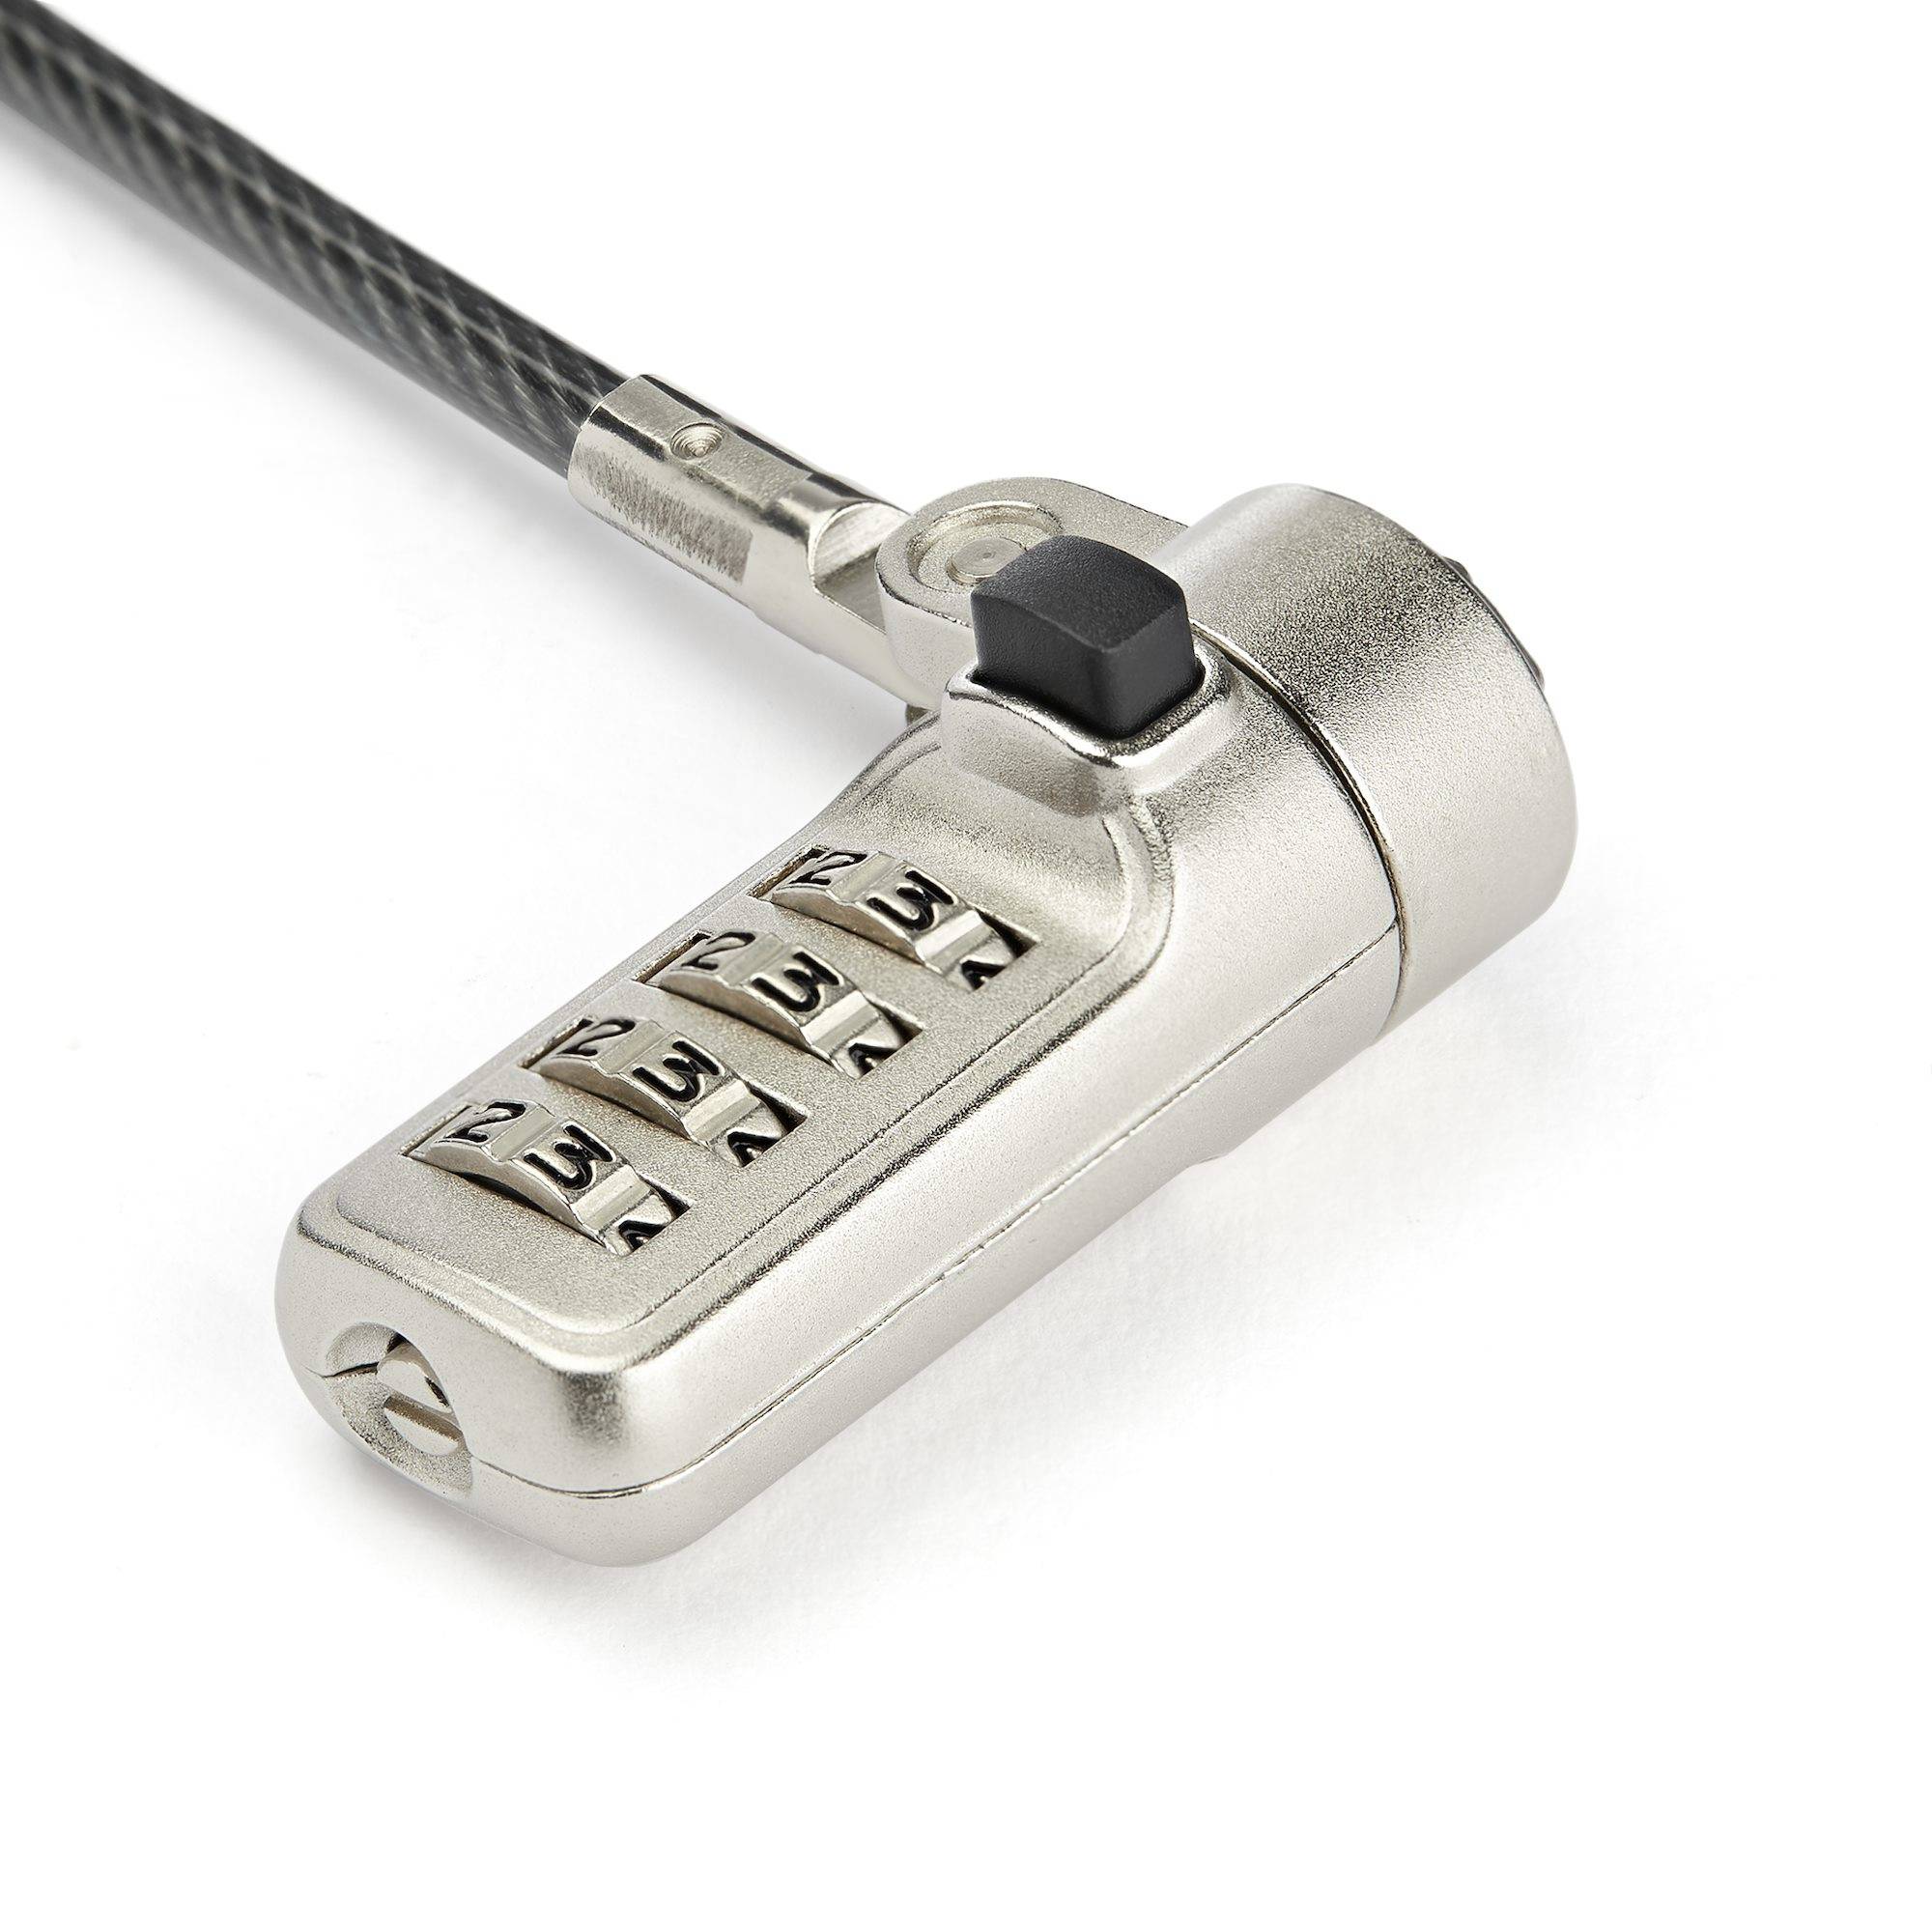 Rca Informatique - image du produit : LAPTOP CABLE LOCK FOUR DIGIT COMBINATION FOR WEDGE LOCK SLOT